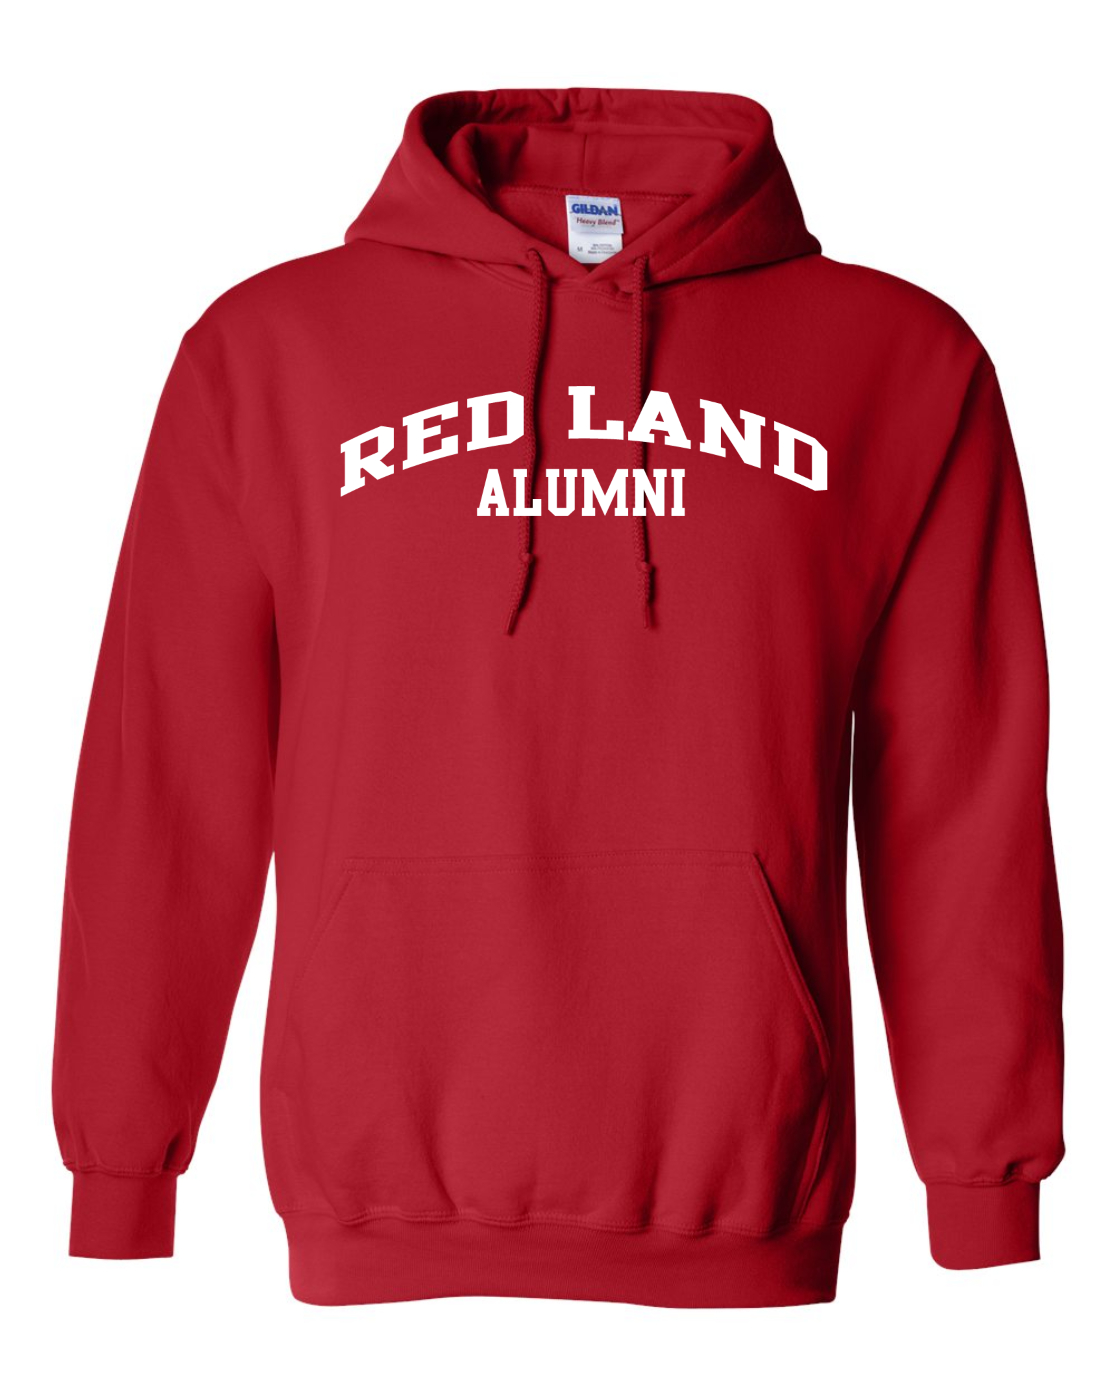 Red Land Standard Hoodie - ALUMNI